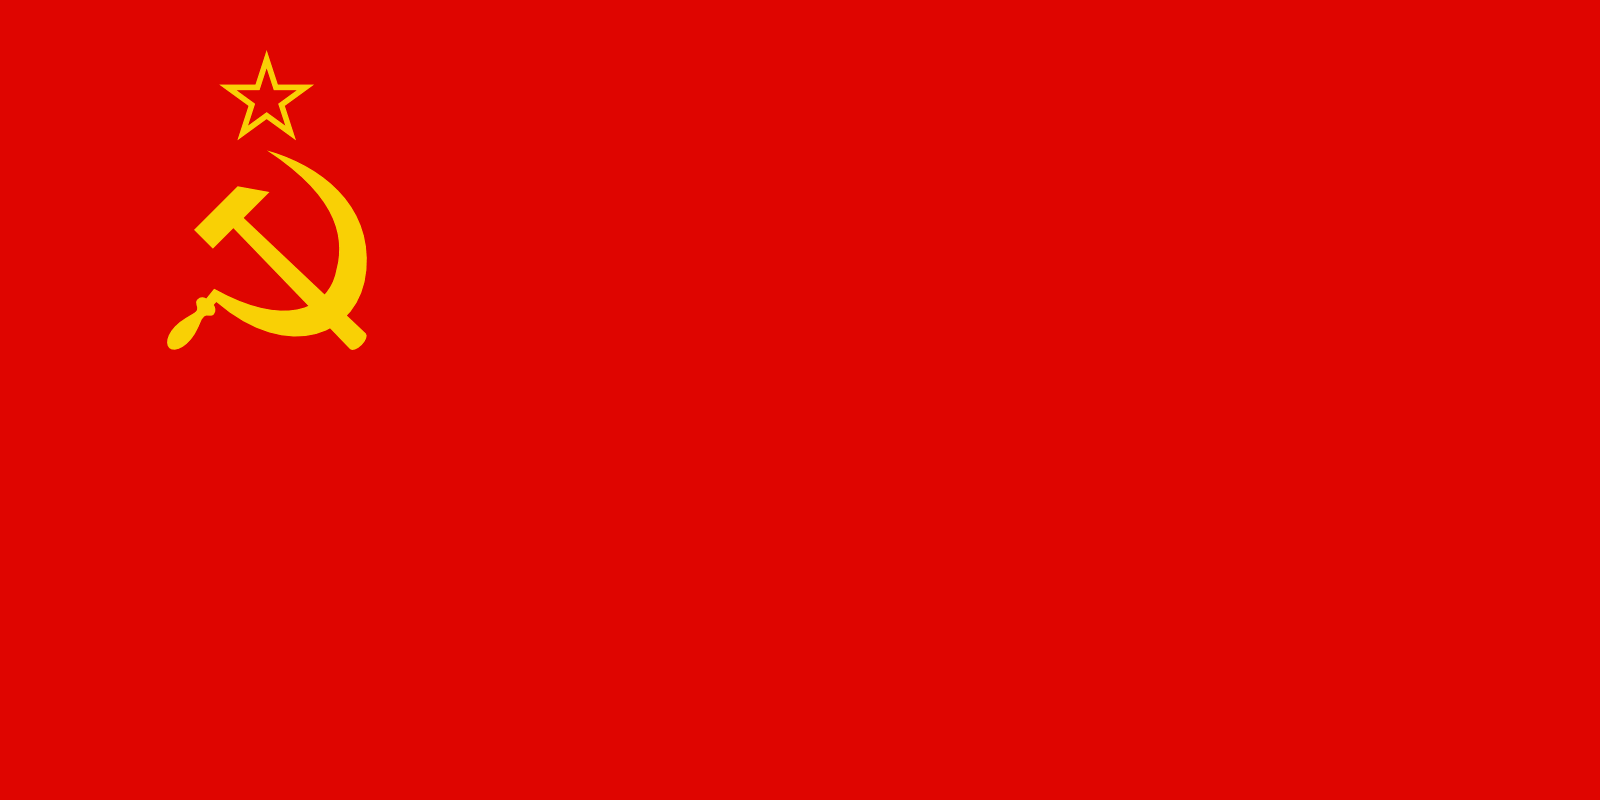 Soviet red banner